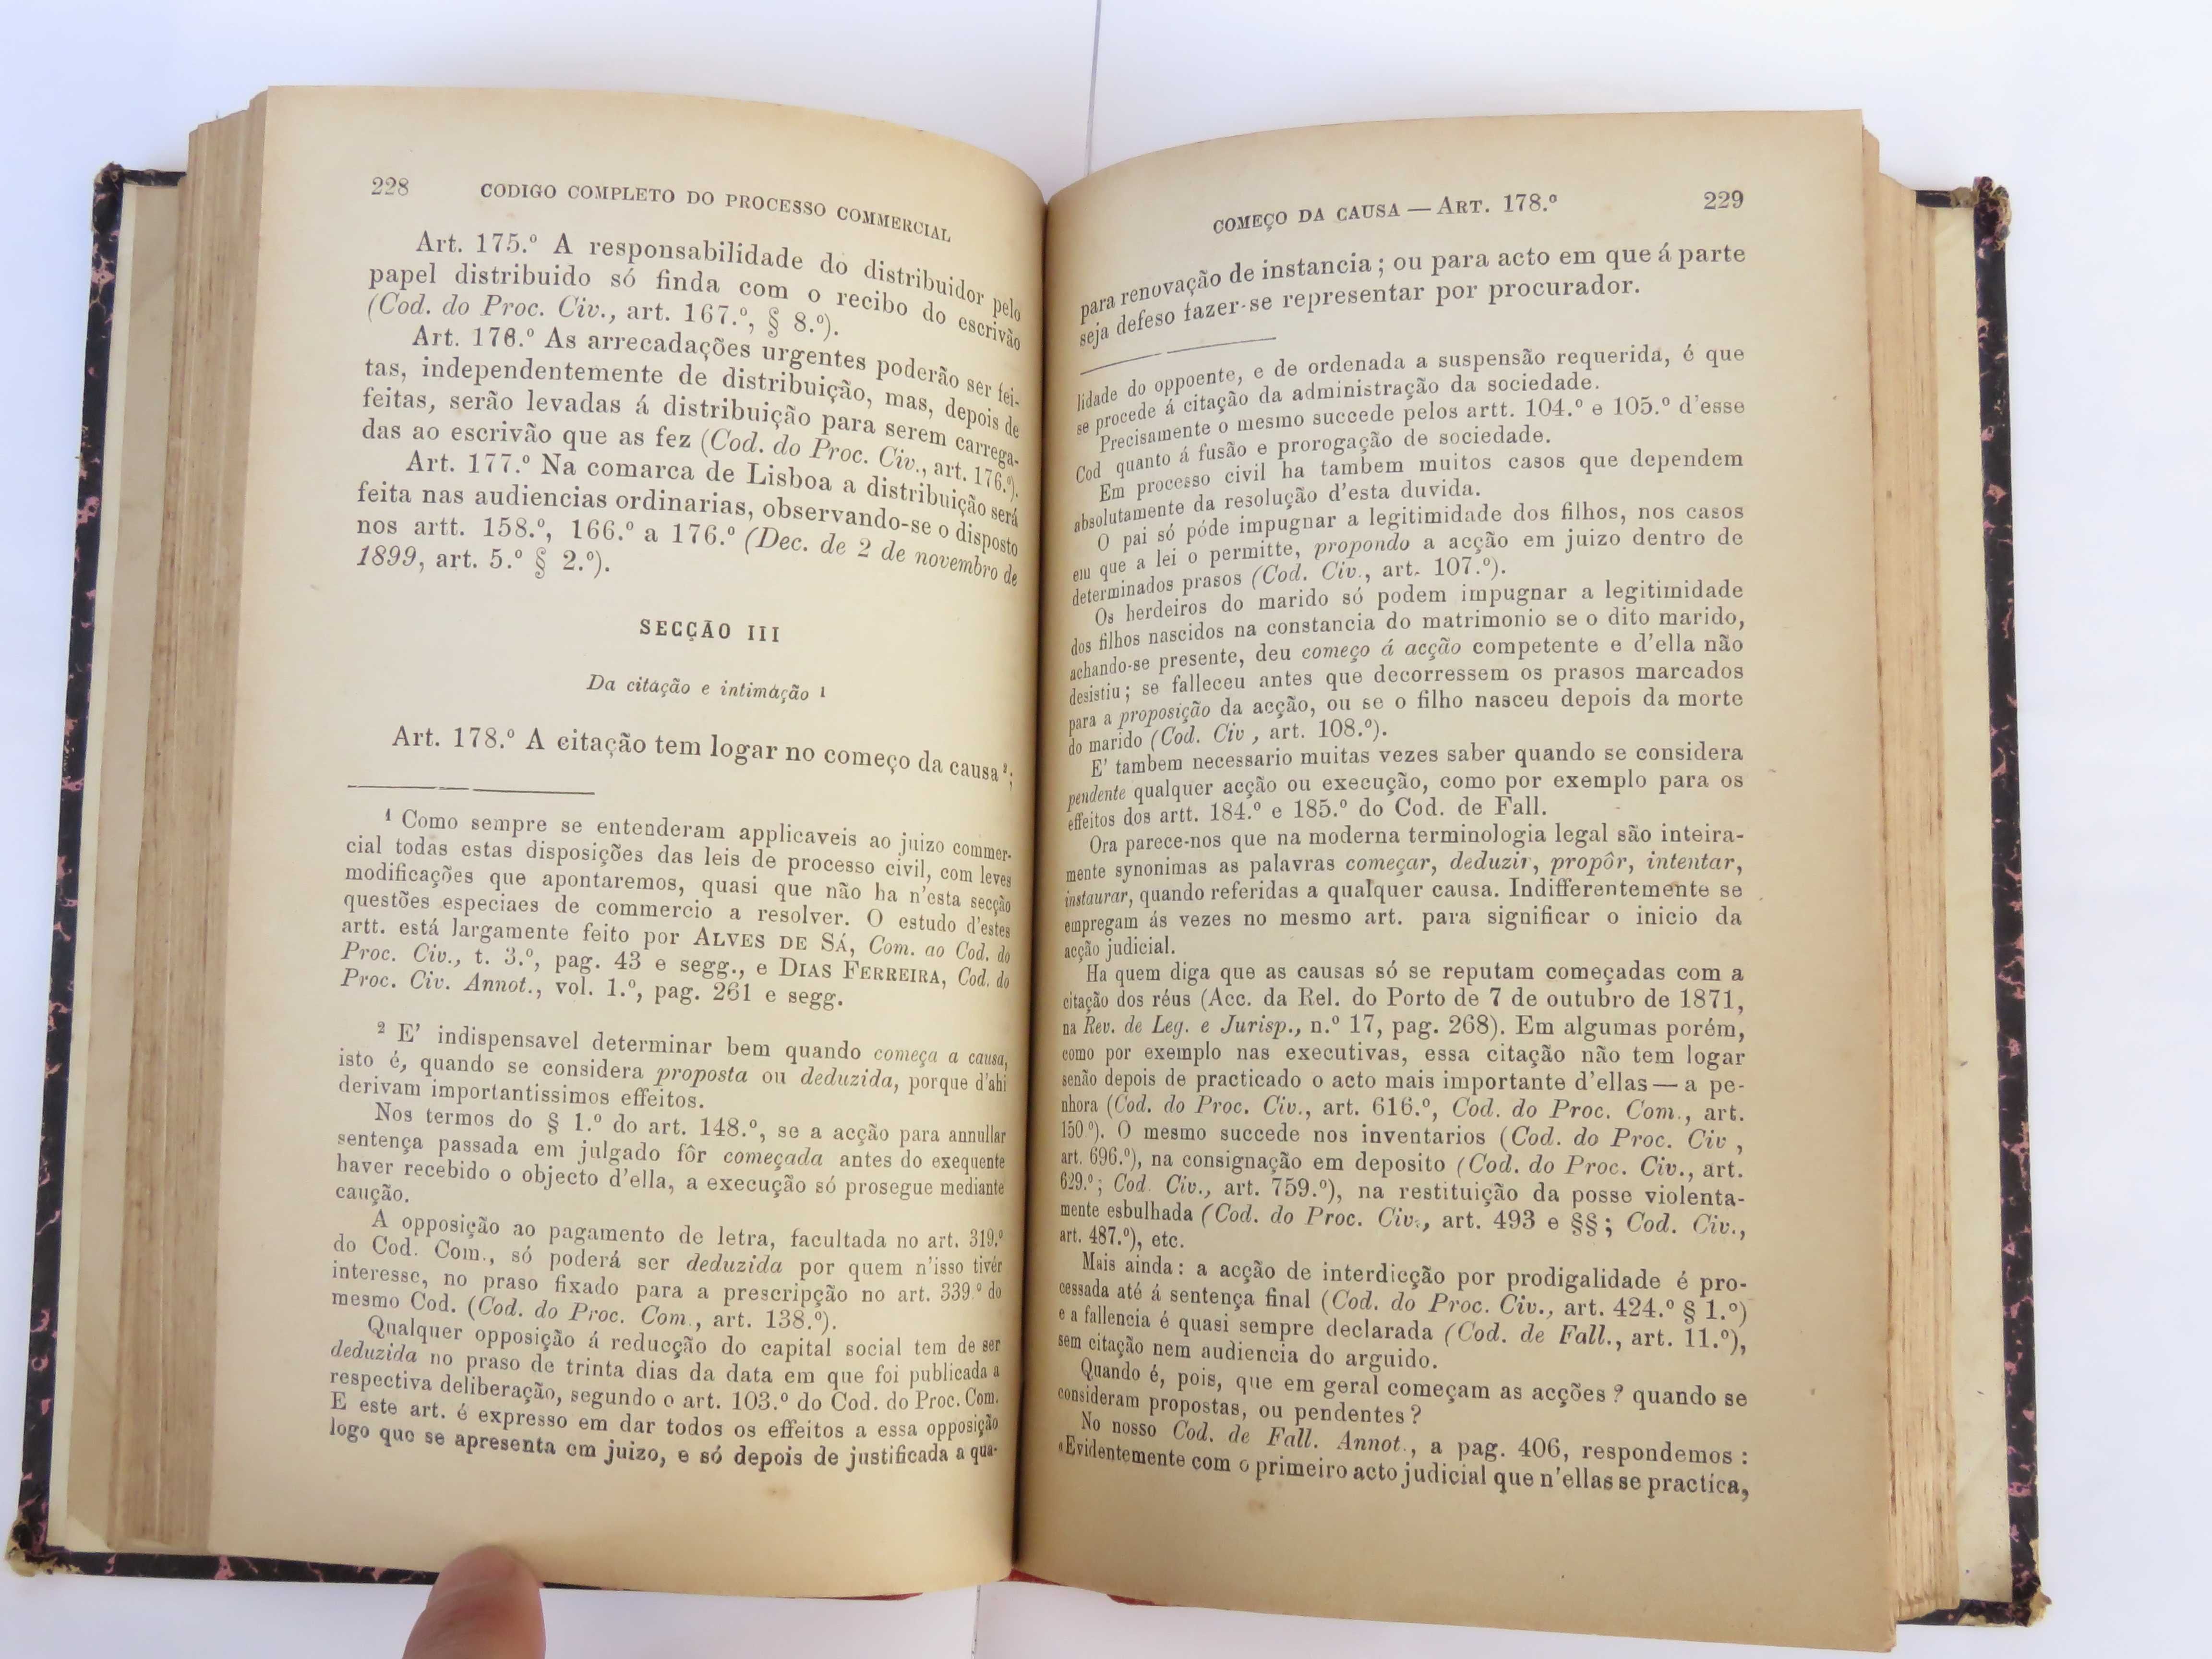 Código Completo do Processo Comercial, 1901, Magalhaes (2 vol)